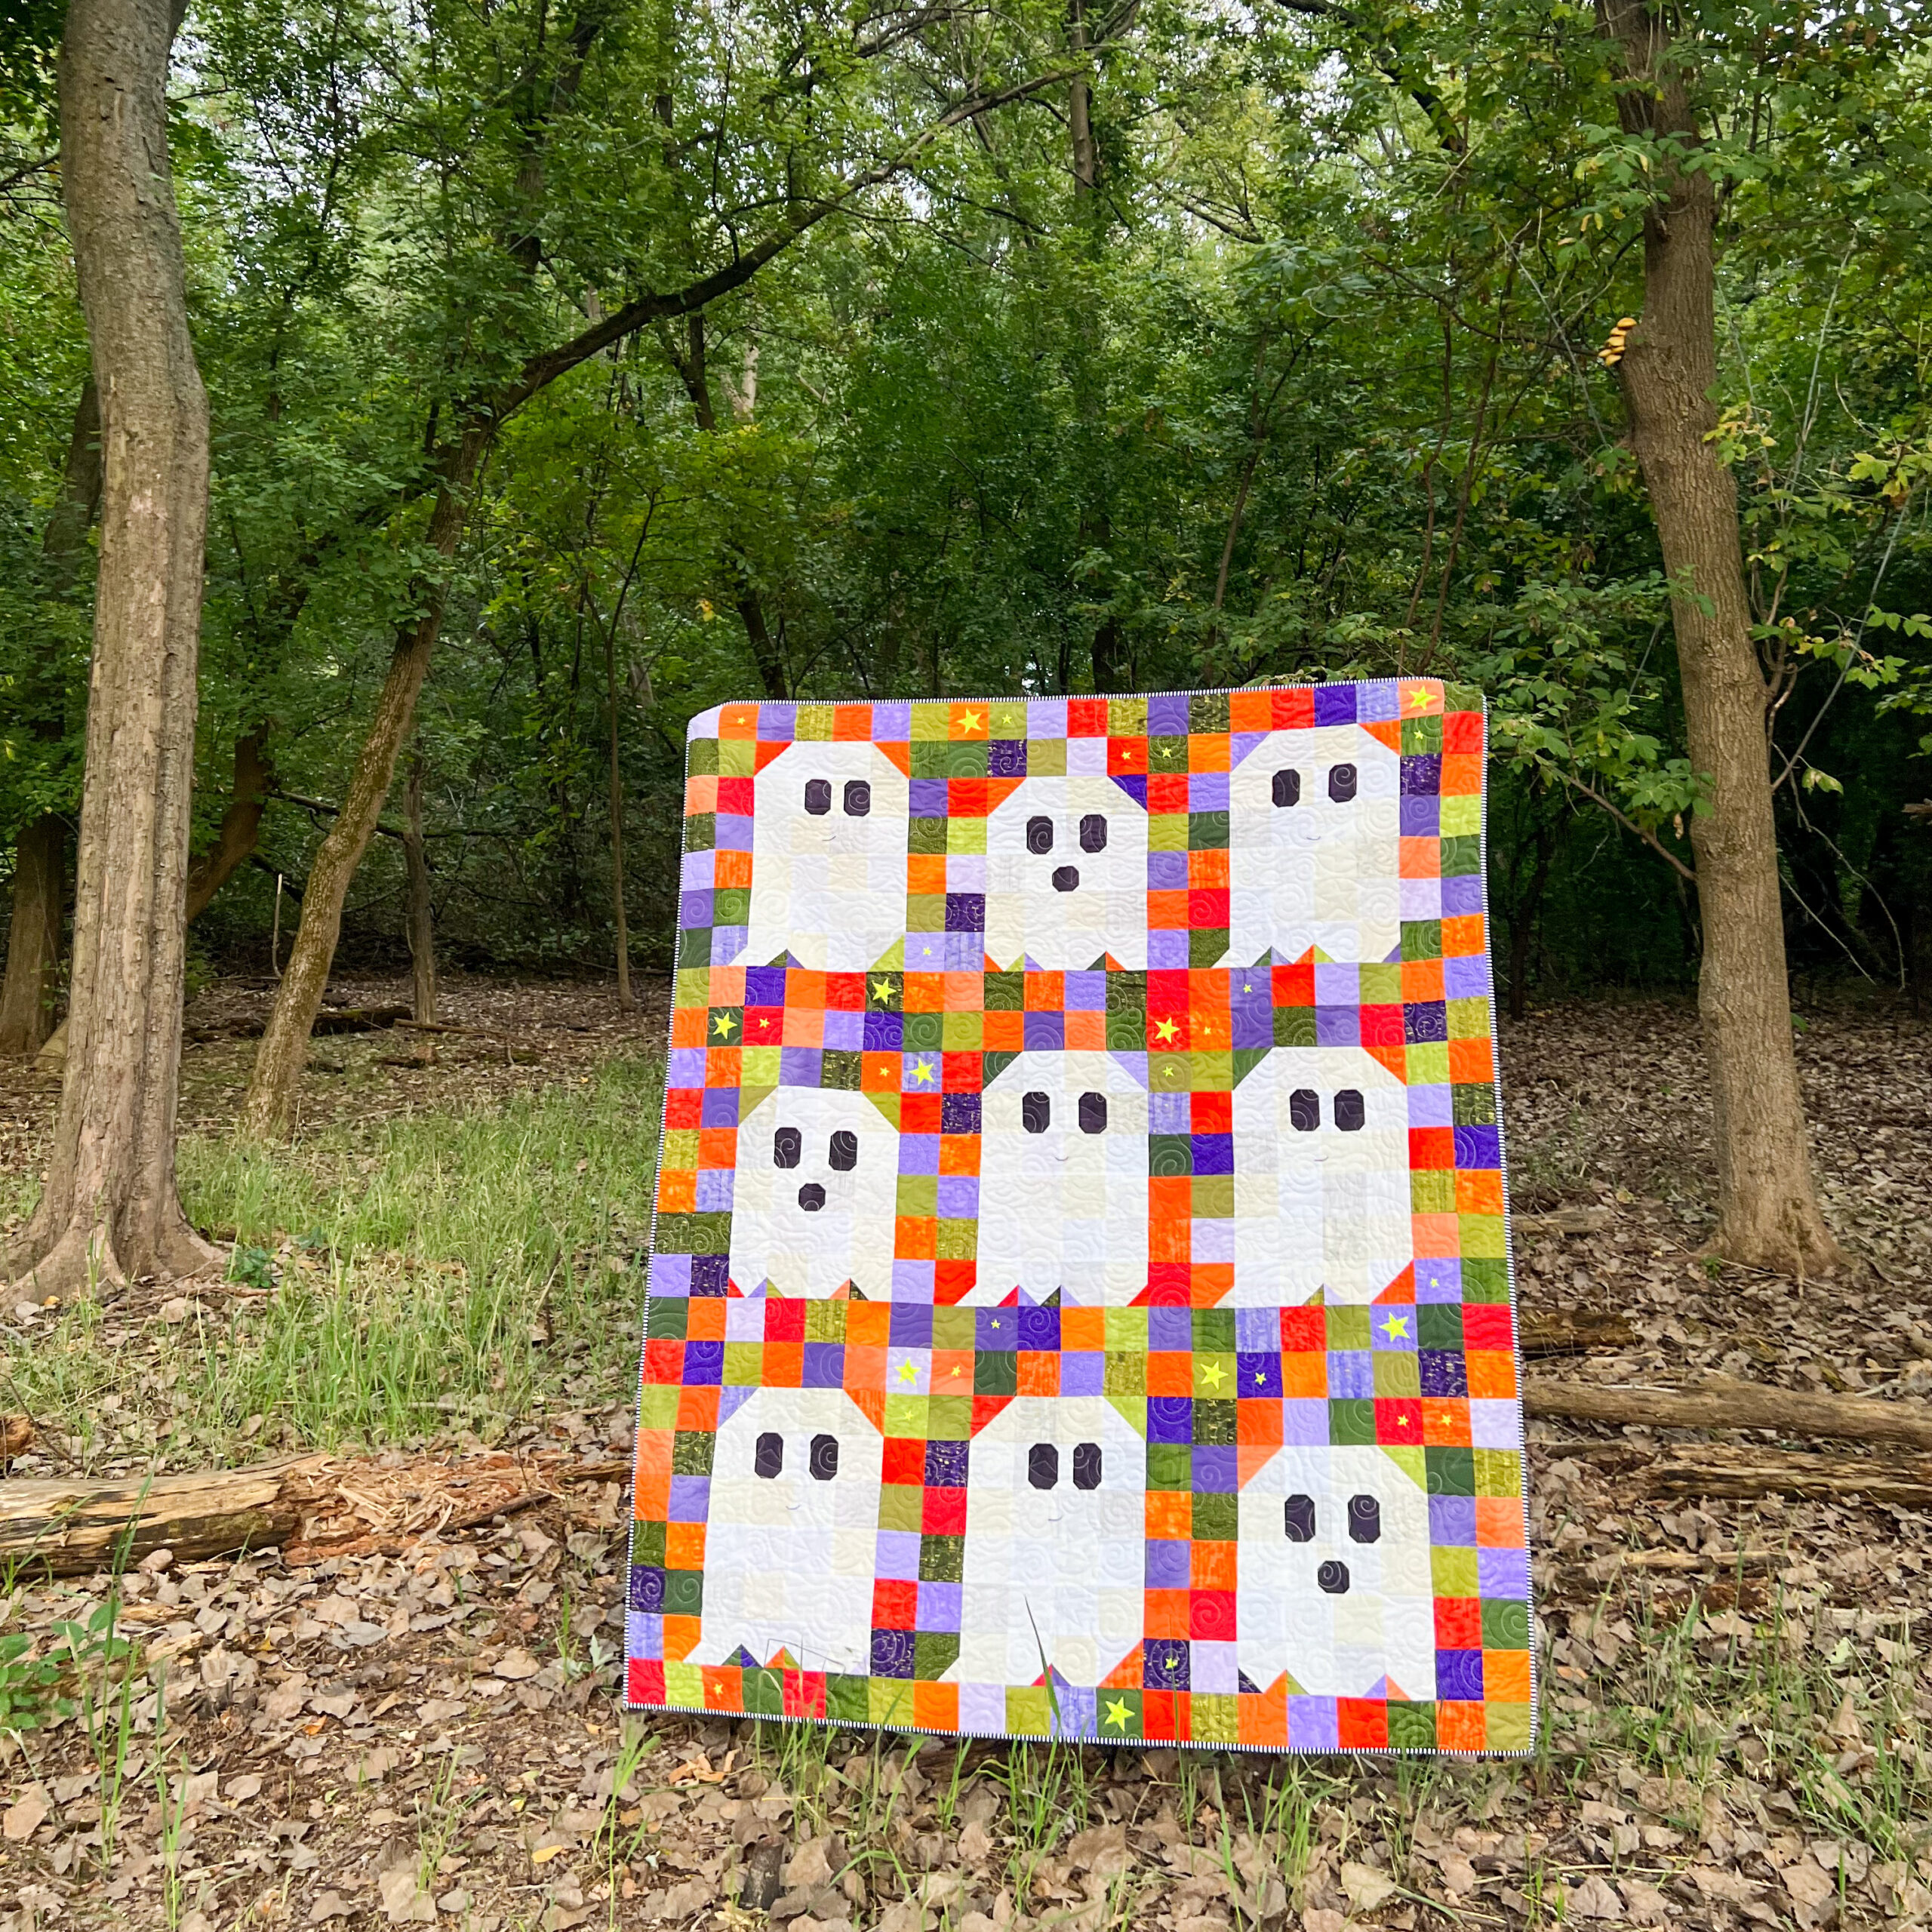 Cute Duffle Bag- Penguin Pattern Tote Bag For Teens